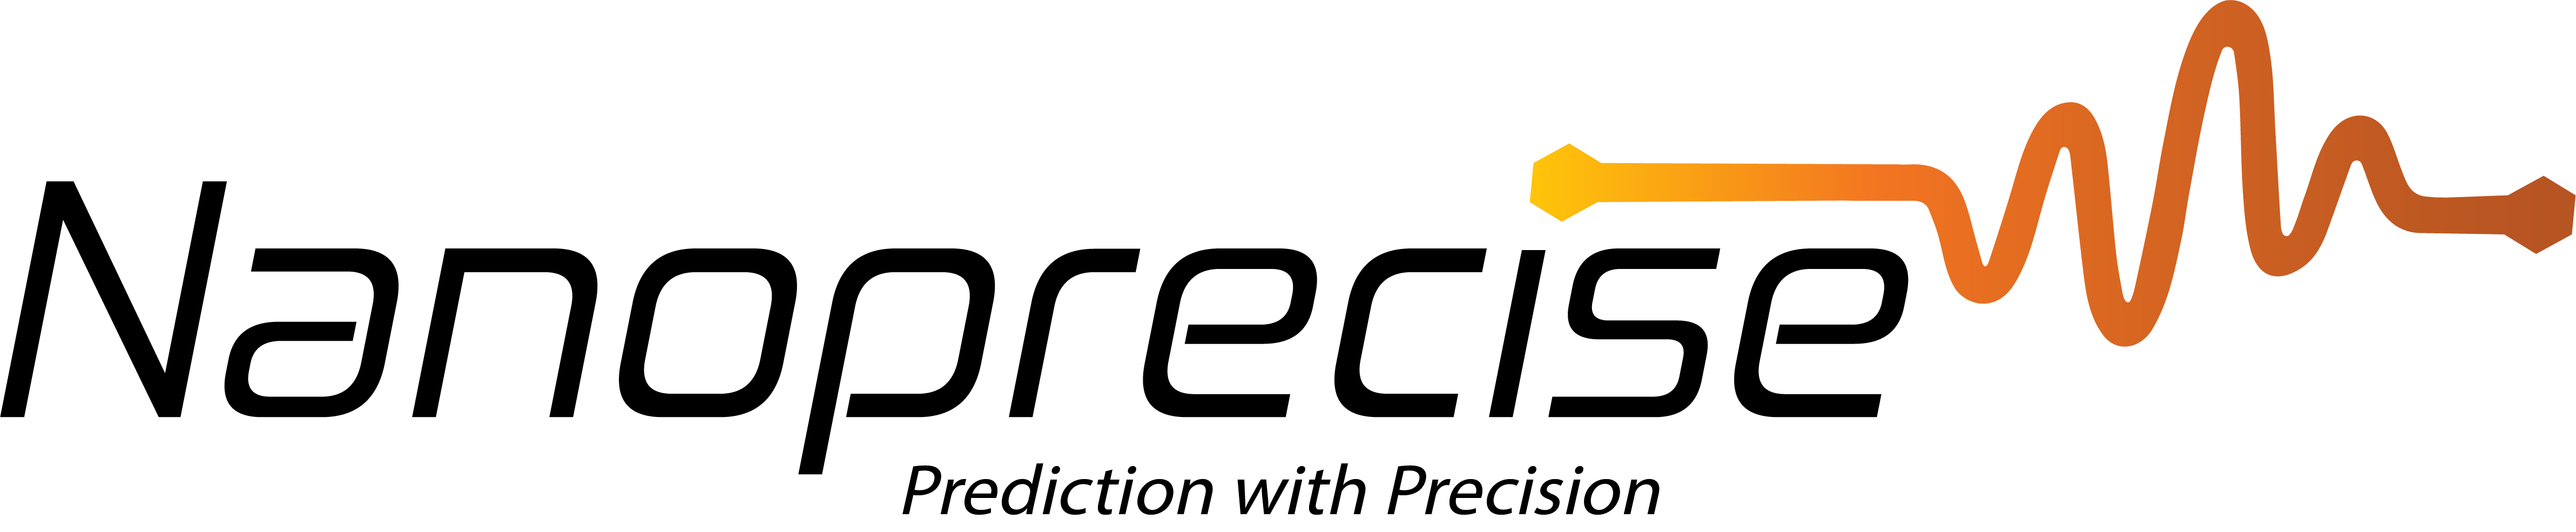 Nanoprecise - Original Logo Transparent